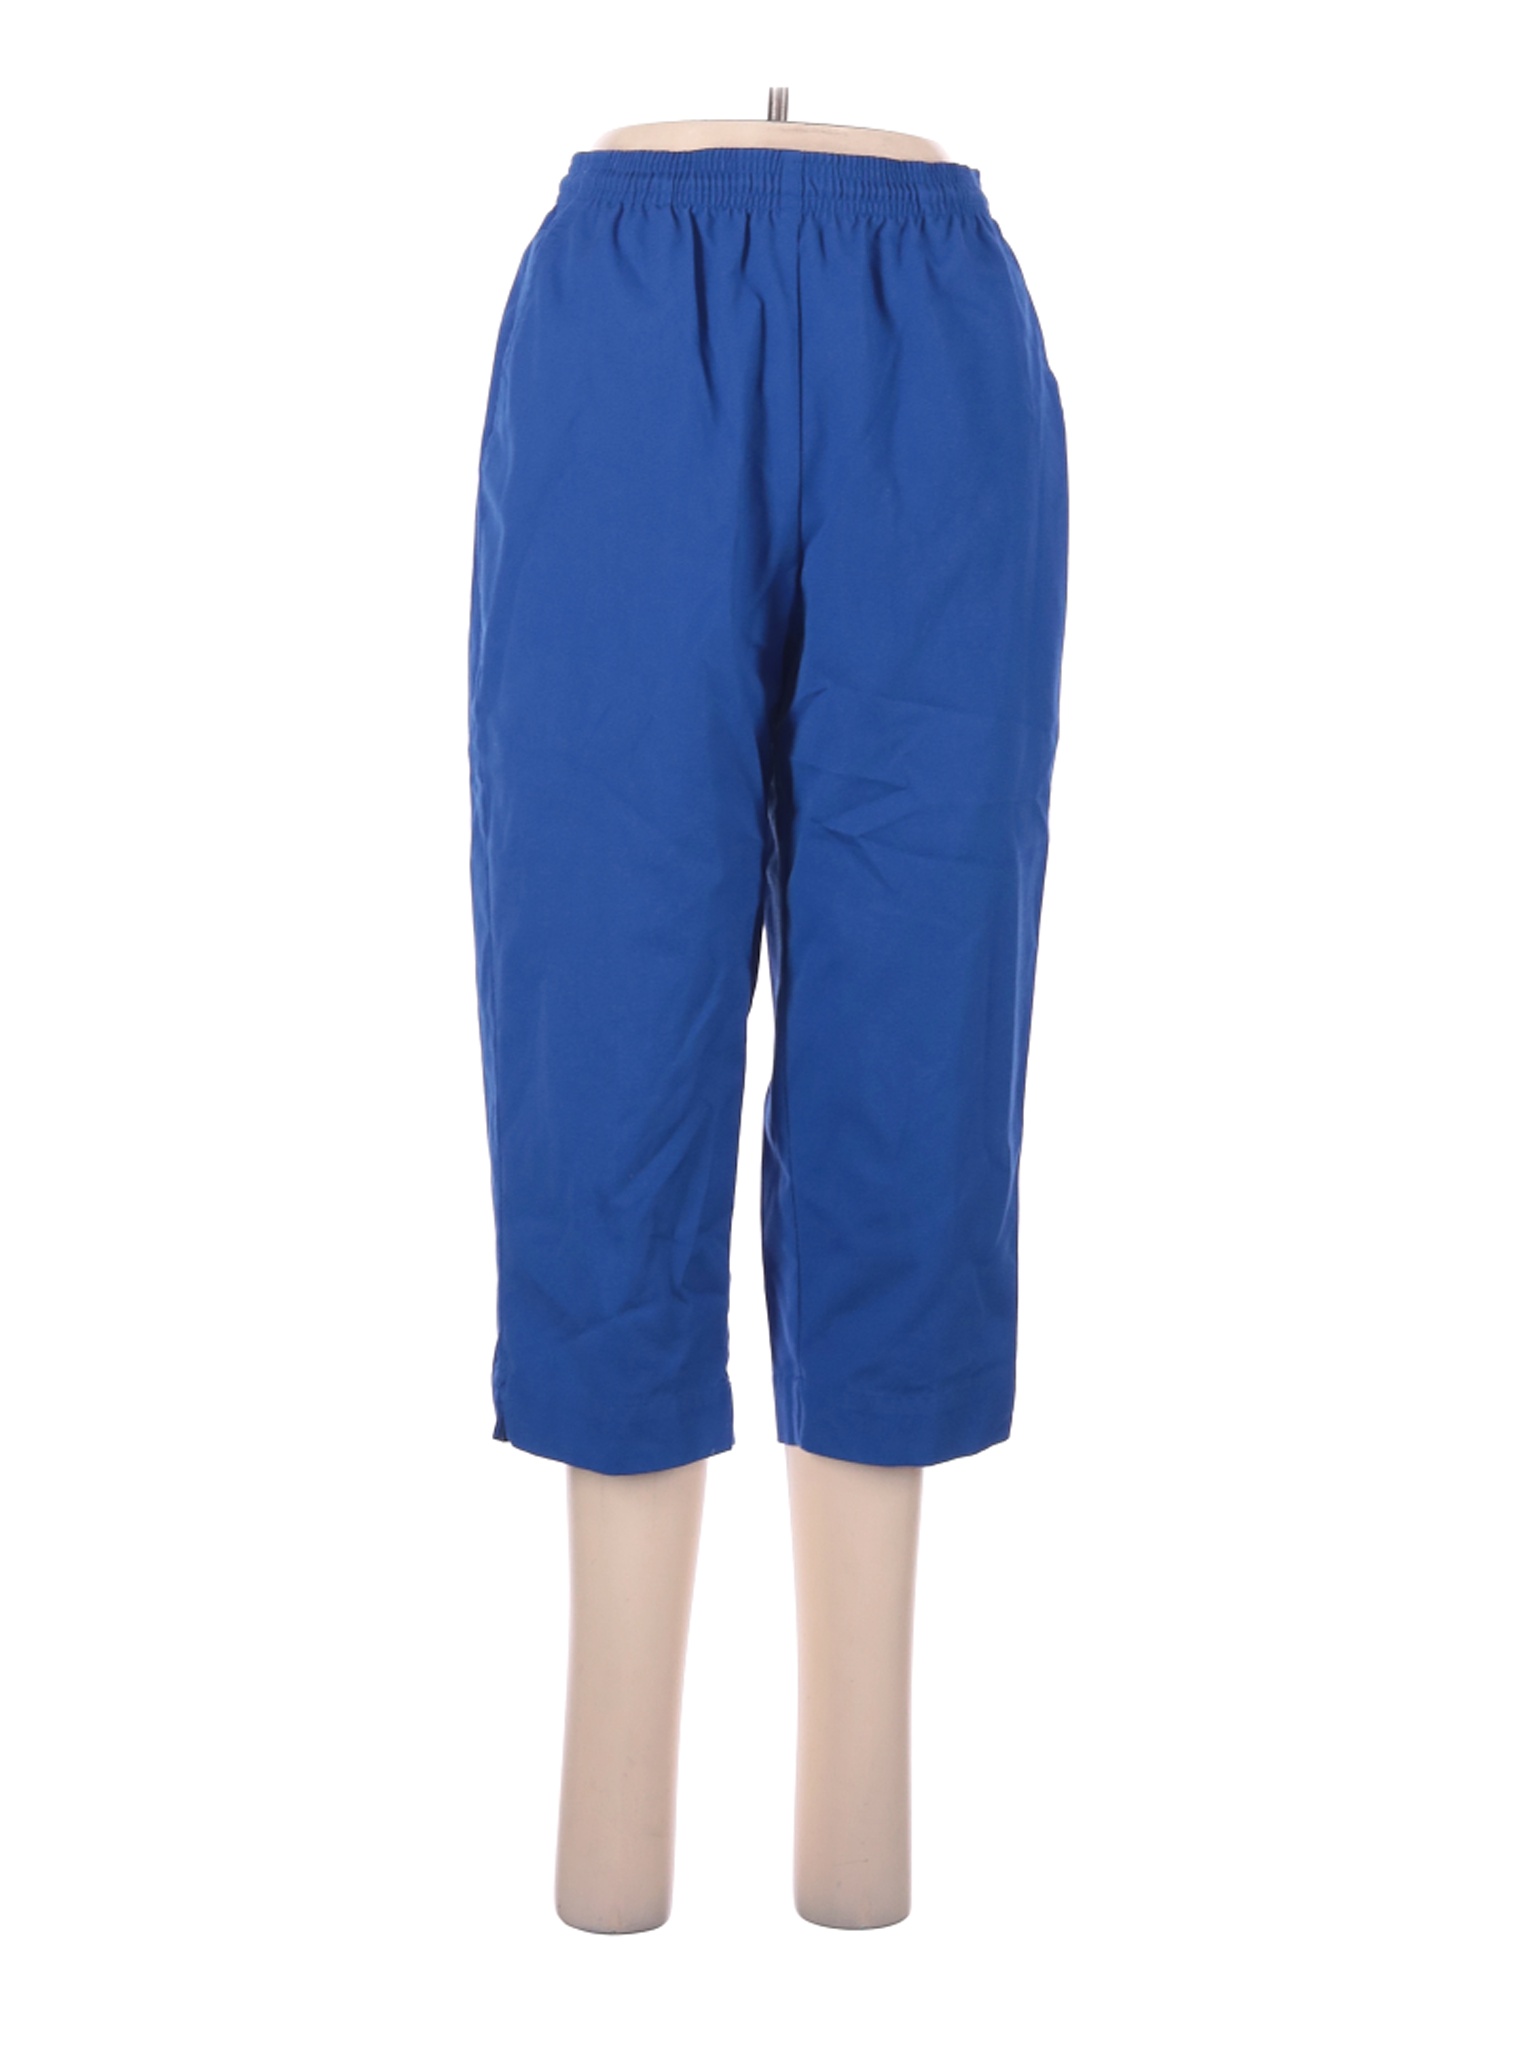 Koret Women Blue Casual Pants 6 | eBay